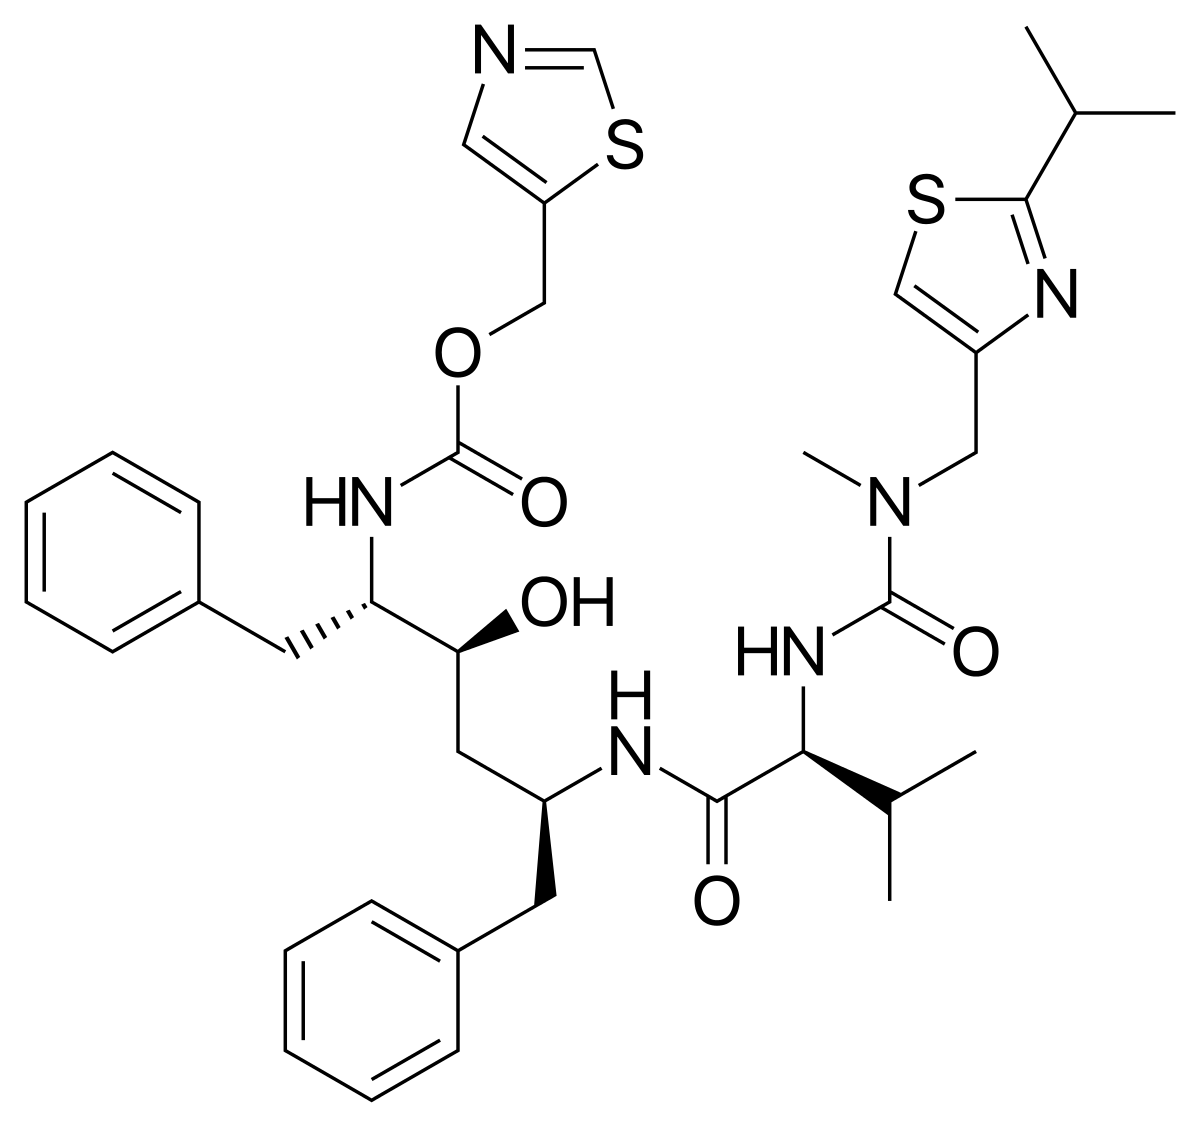 Figura 2. Estructura molecular de Ritonavir, un derivado del aminoácido L-valina. Estas moléculas pueden formar dos estructuras cristalinas diferentes.